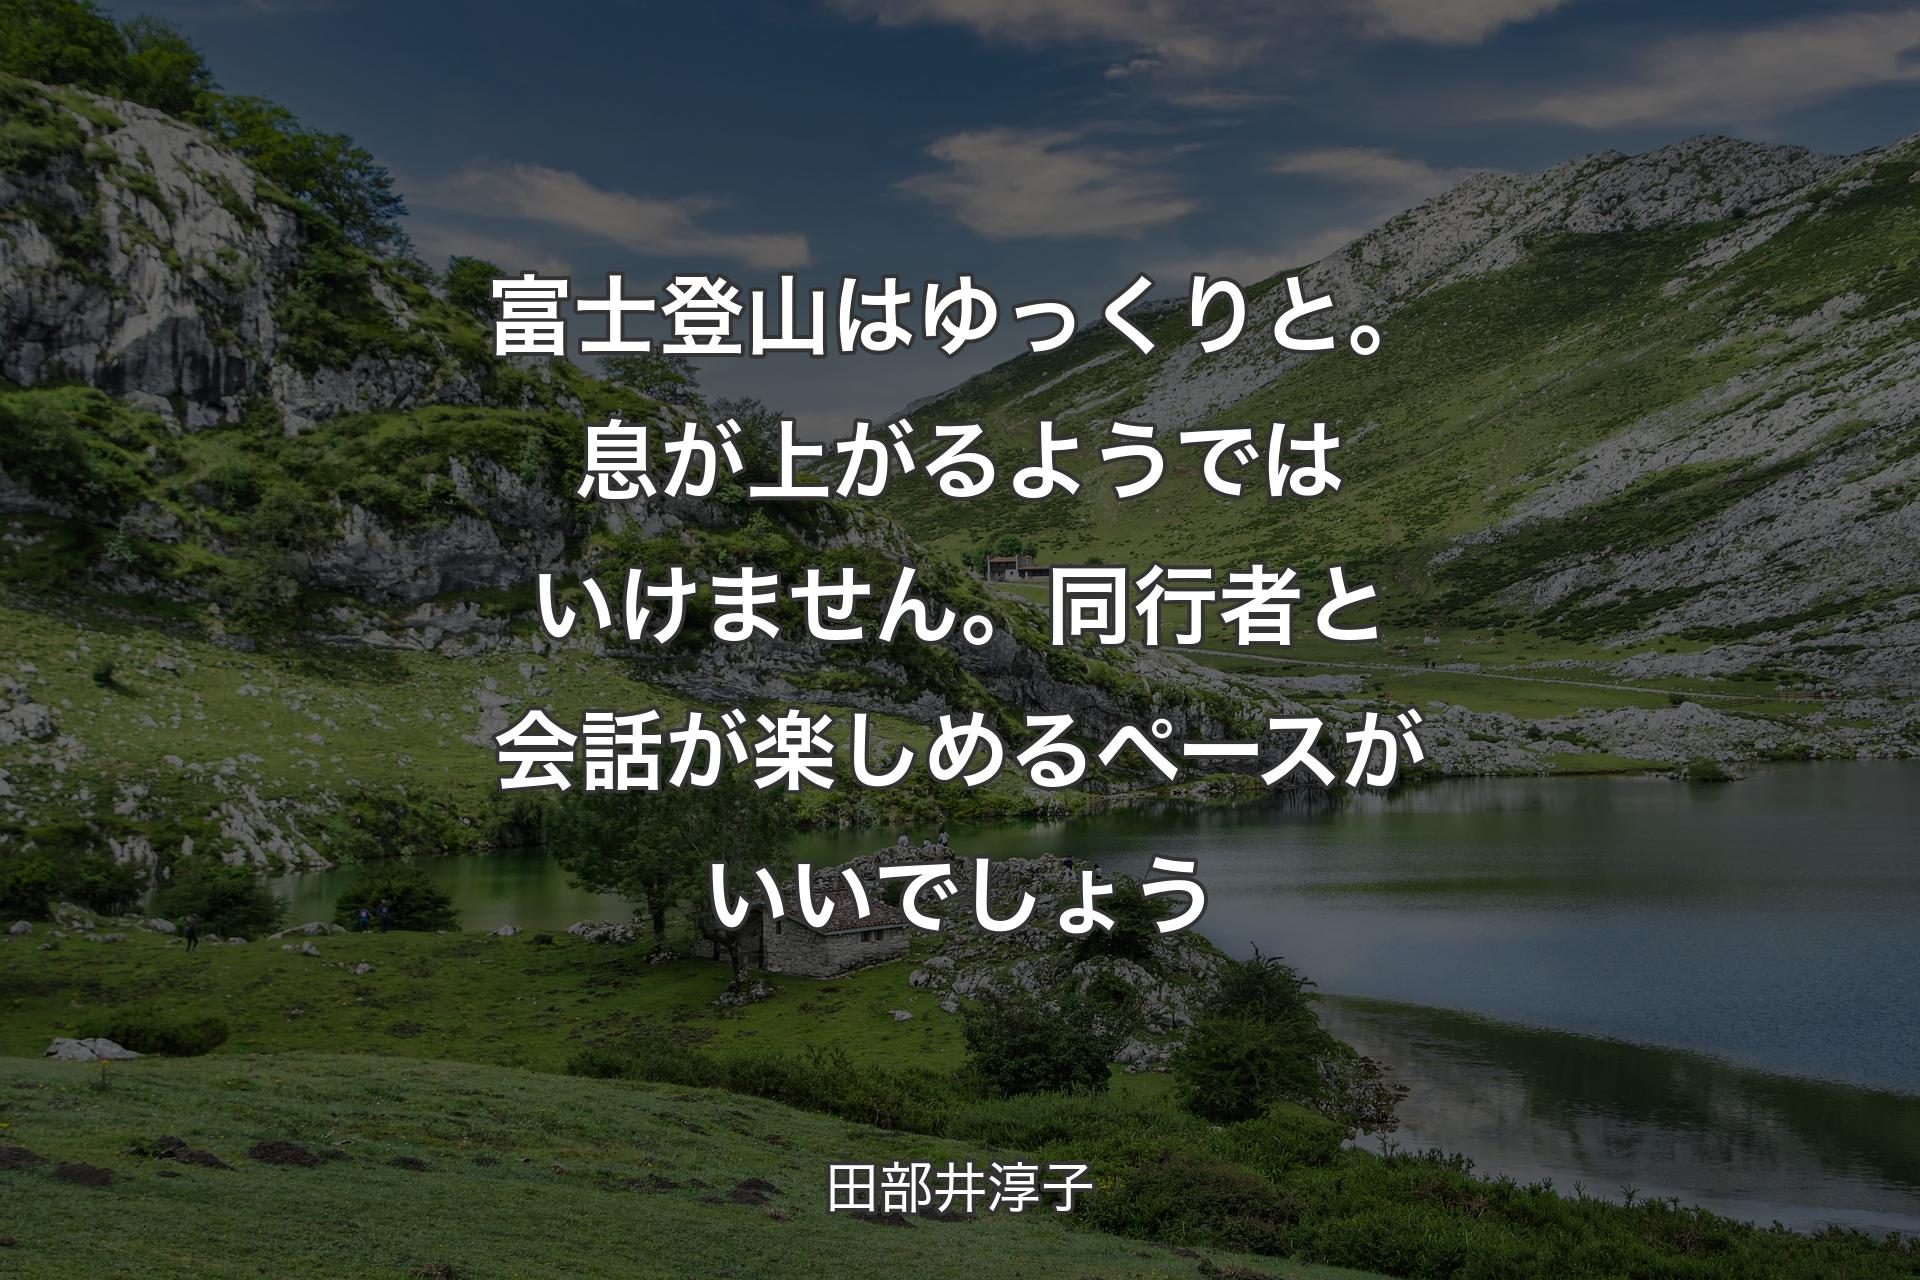 【背景1】富士登山はゆっくりと。息が上がるようではいけません。同行者と会話が楽しめるペースがいいでしょう - 田部井淳子